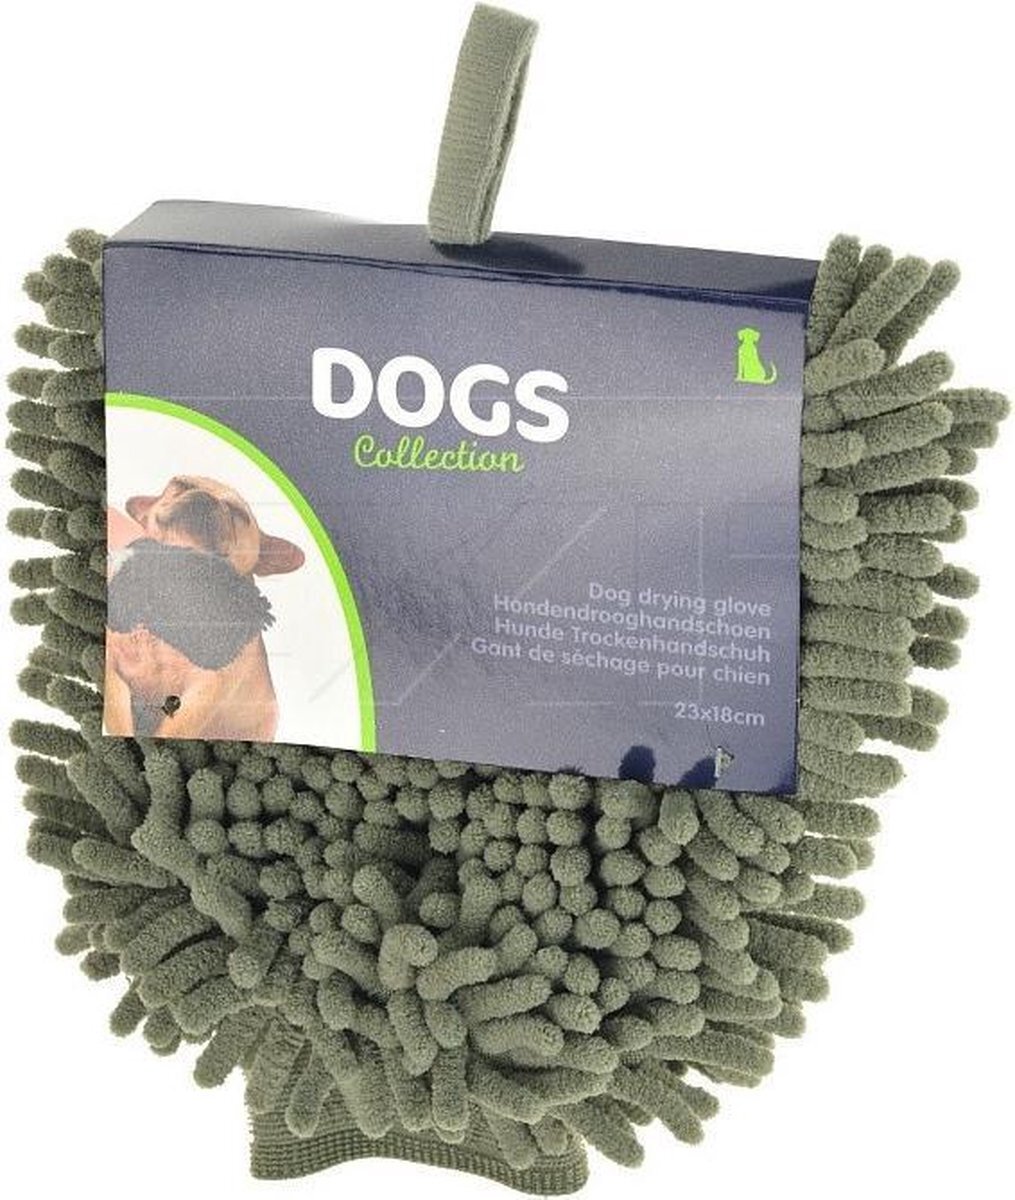 Dogs Collection Hondendrooghandschoen 23 Cm Microfiber Groen groen